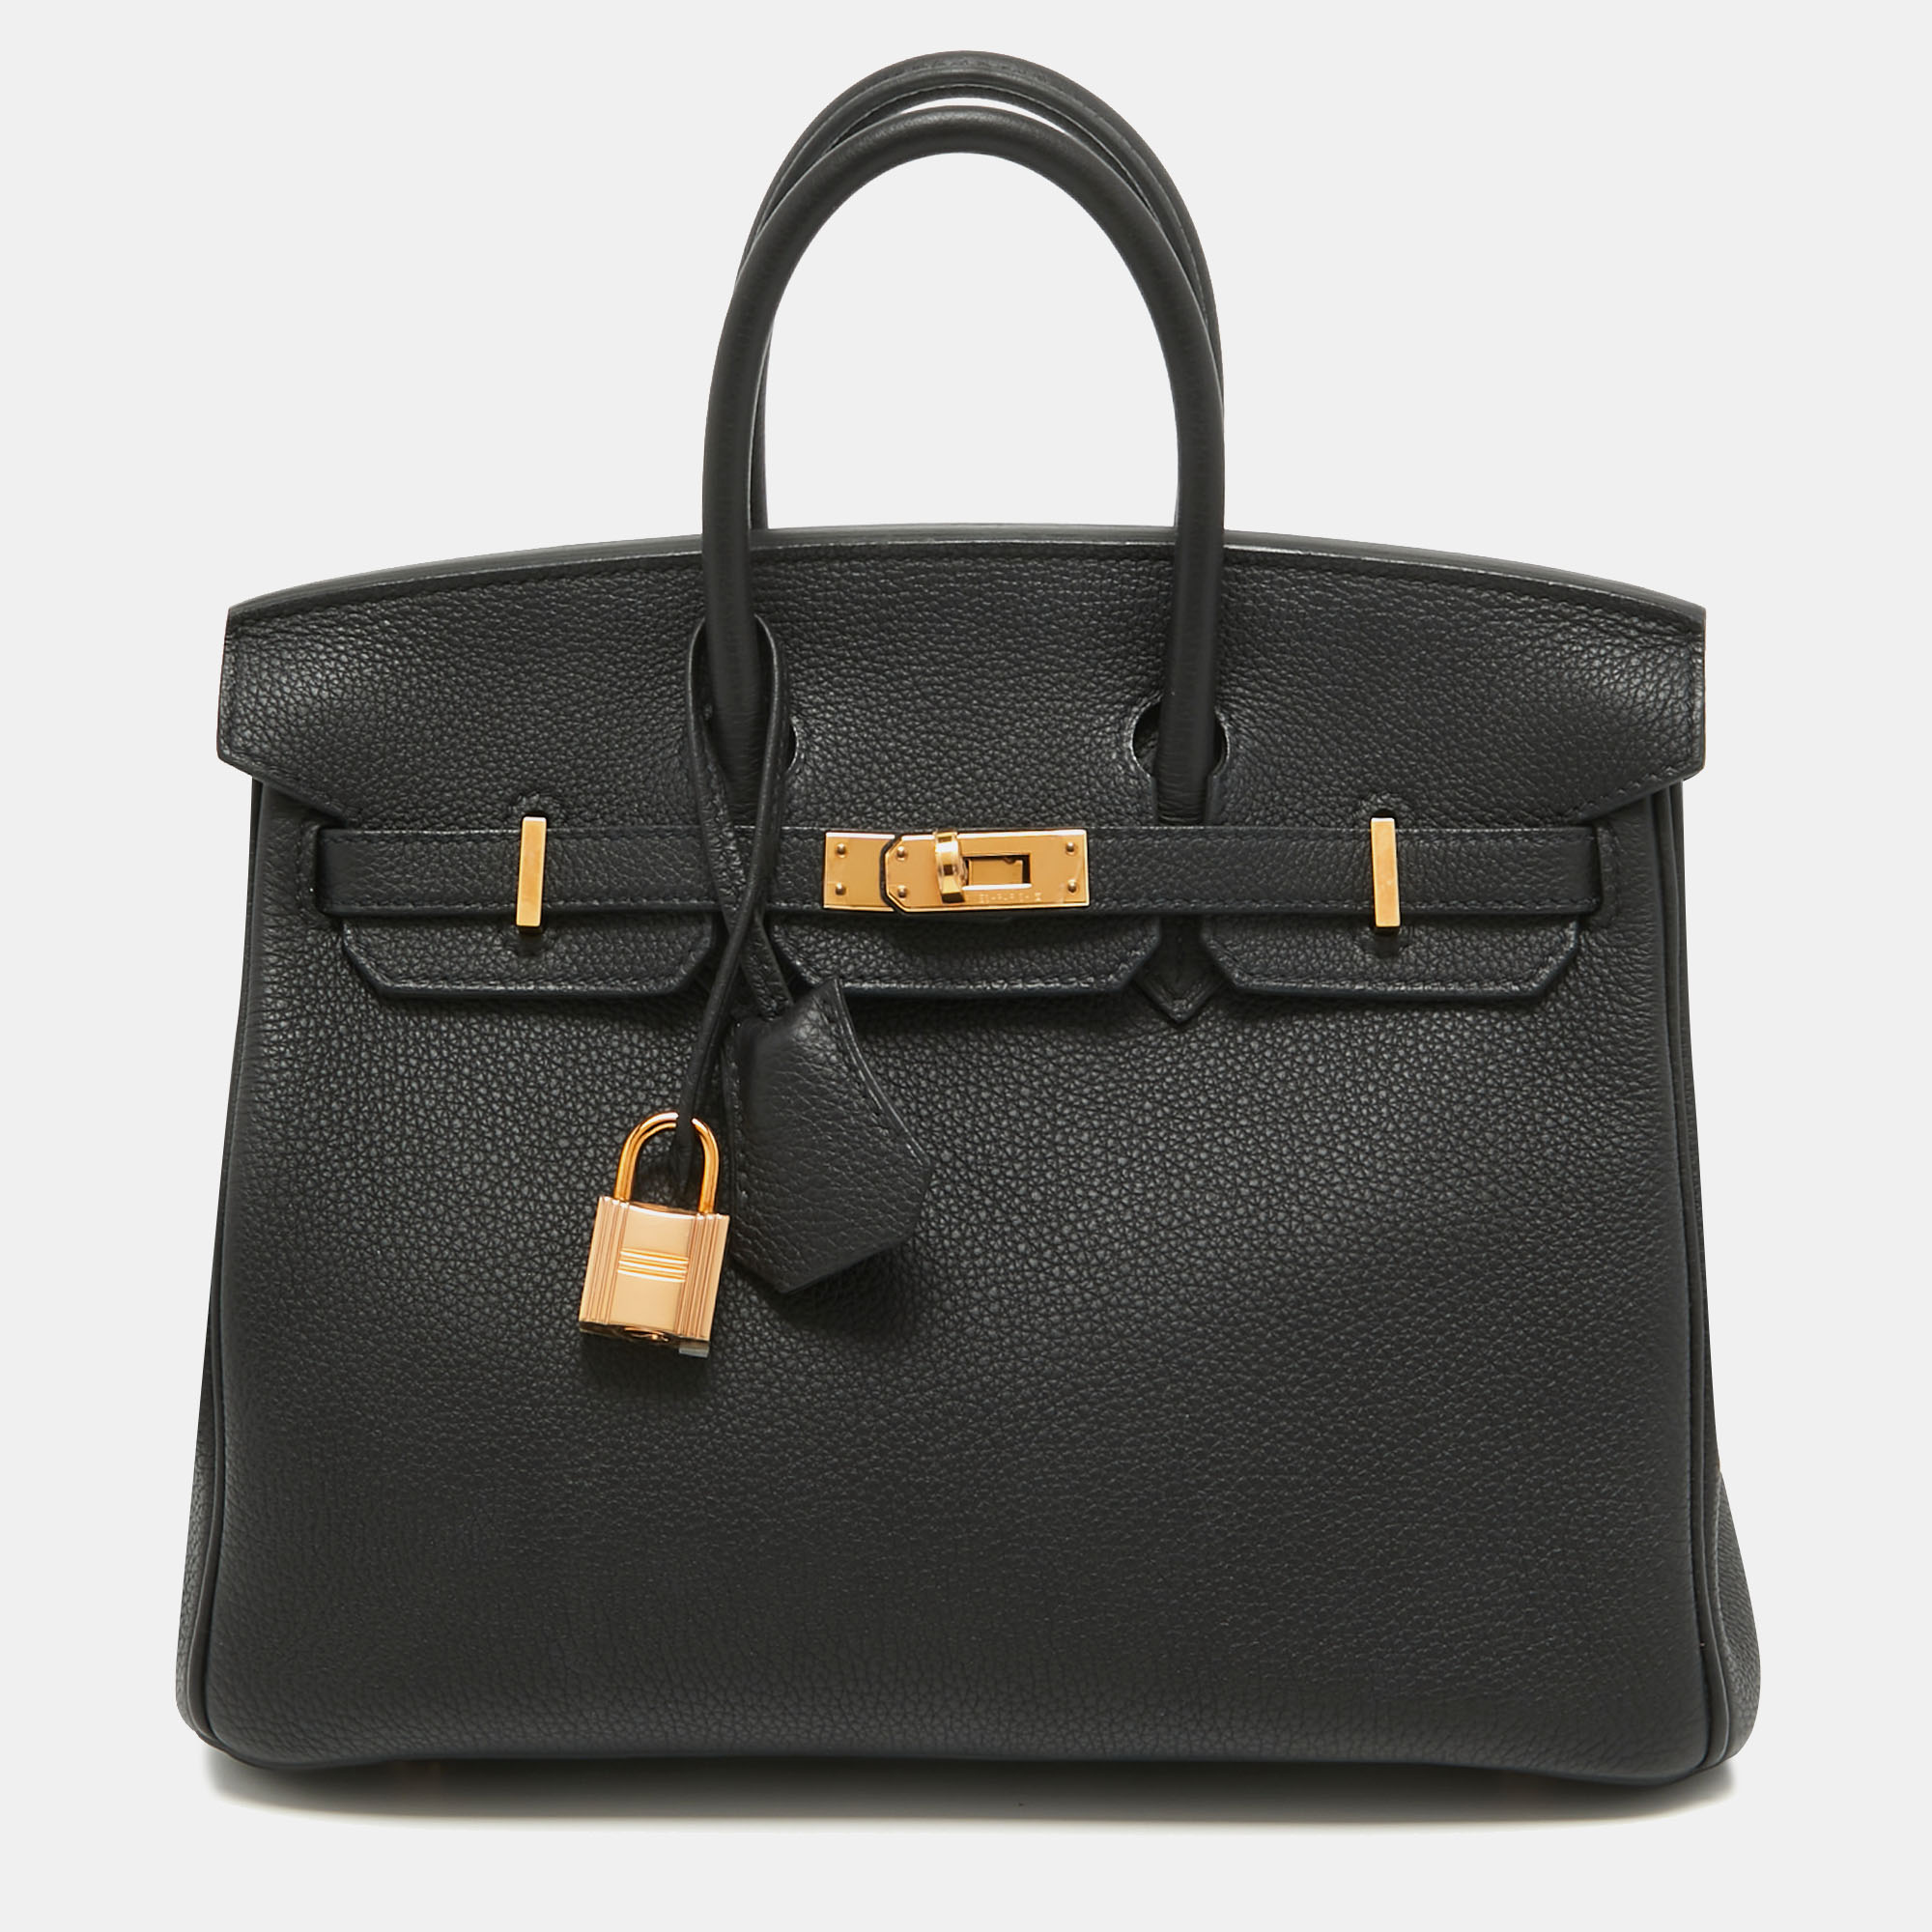 Pre-owned Hermes Black Togo Leather Gold Finish Birkin 25 Bag